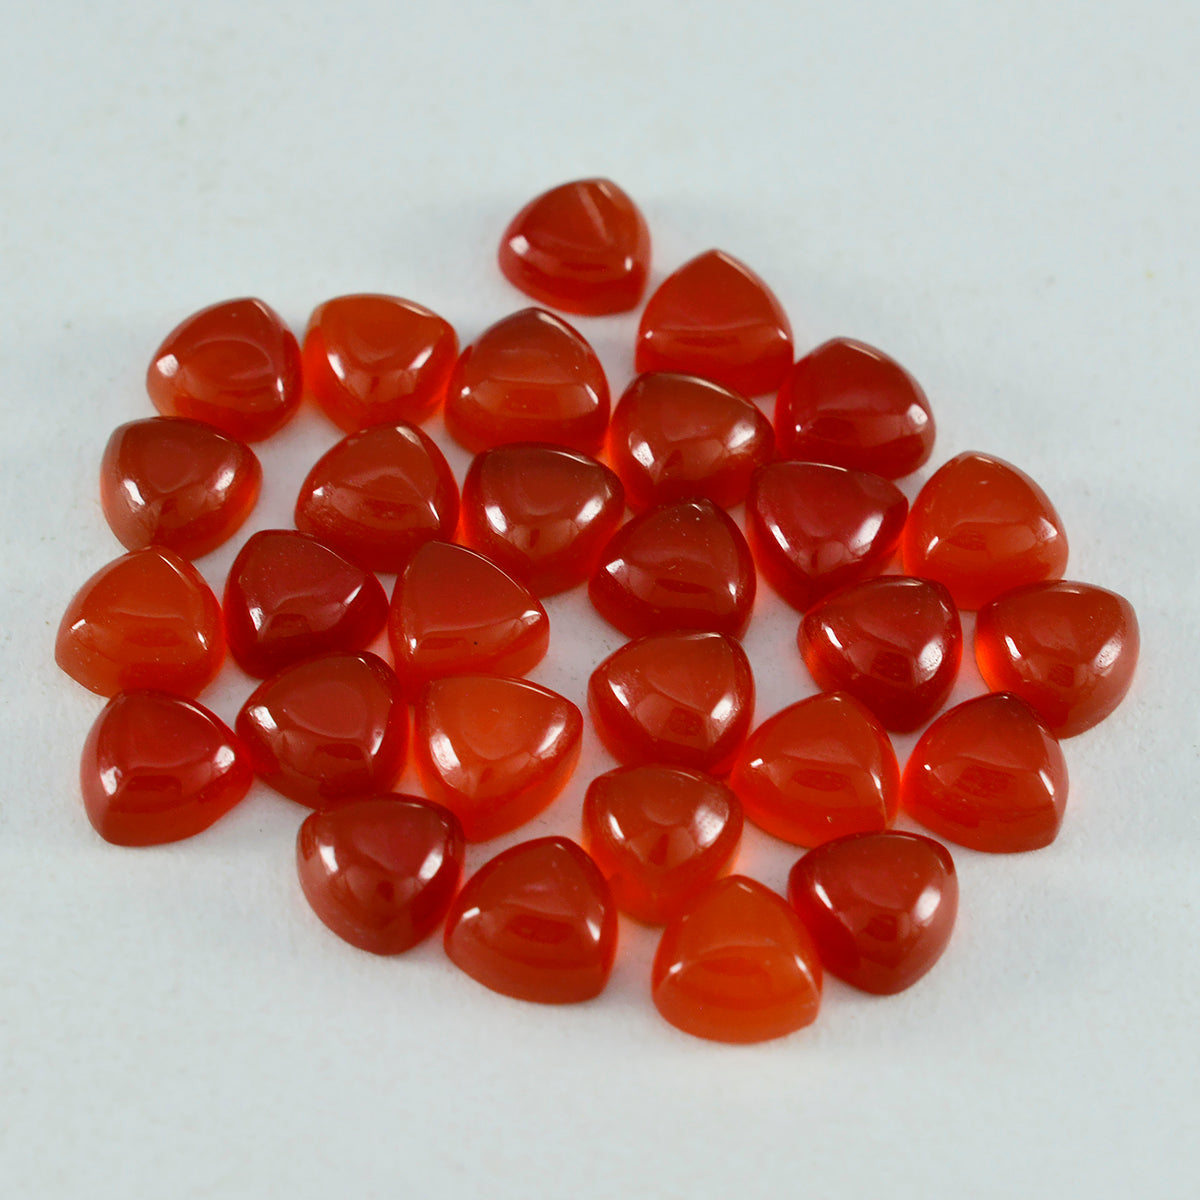 Riyogems 1PC rode onyx cabochon 5x5 mm biljoen vorm uitstekende kwaliteit losse edelsteen